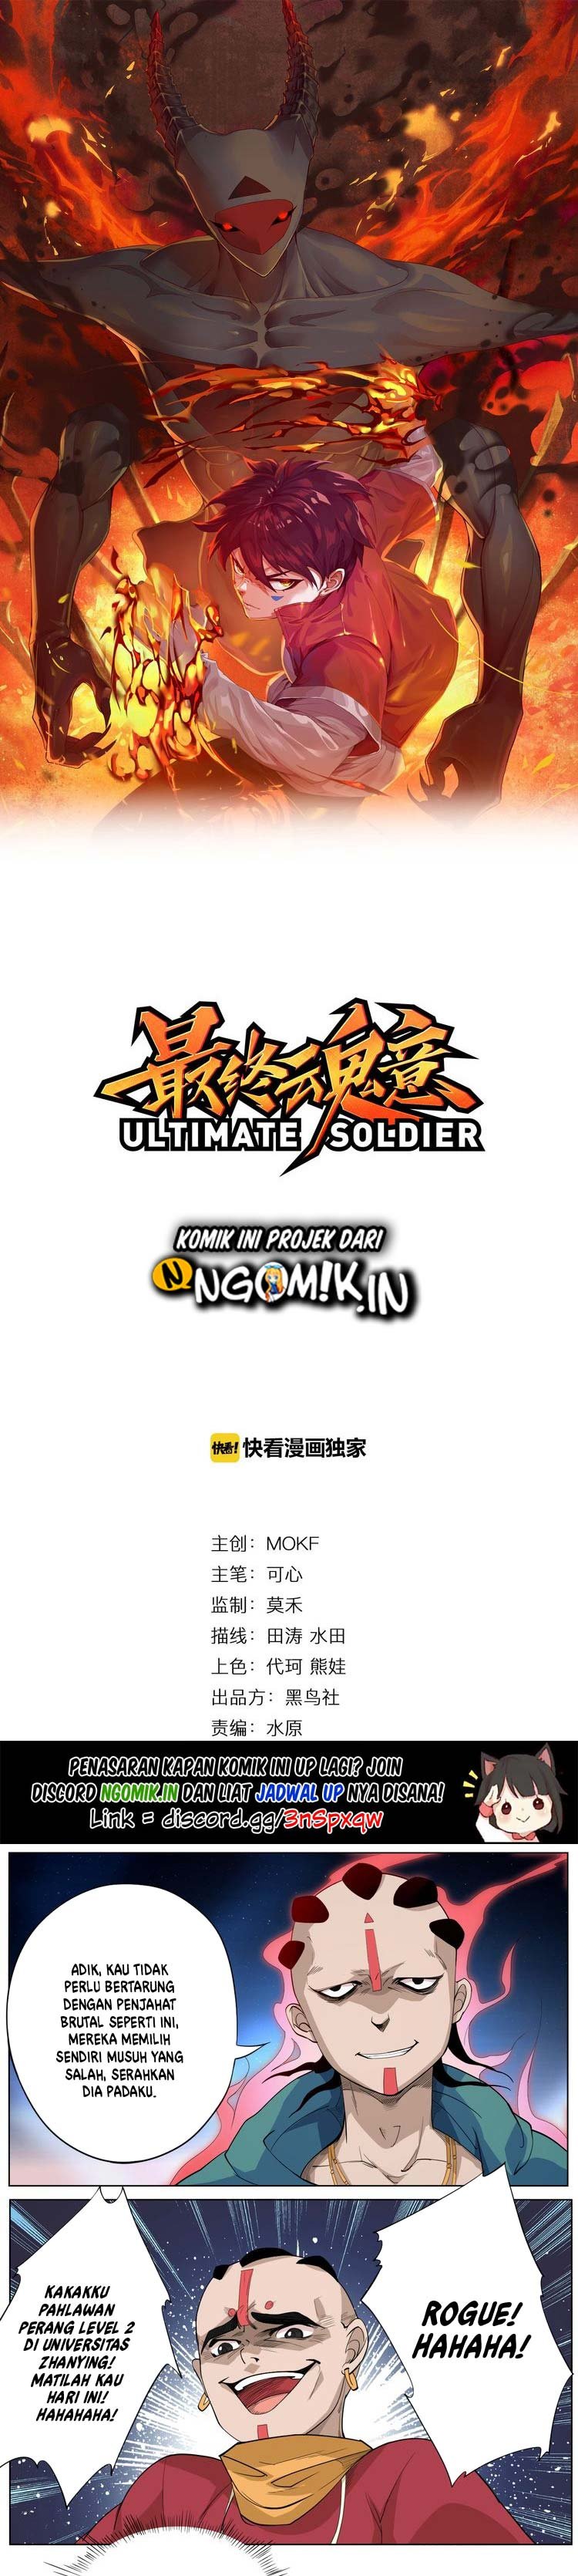 Baca Ultimate Soldier Chapter 2  - GudangKomik